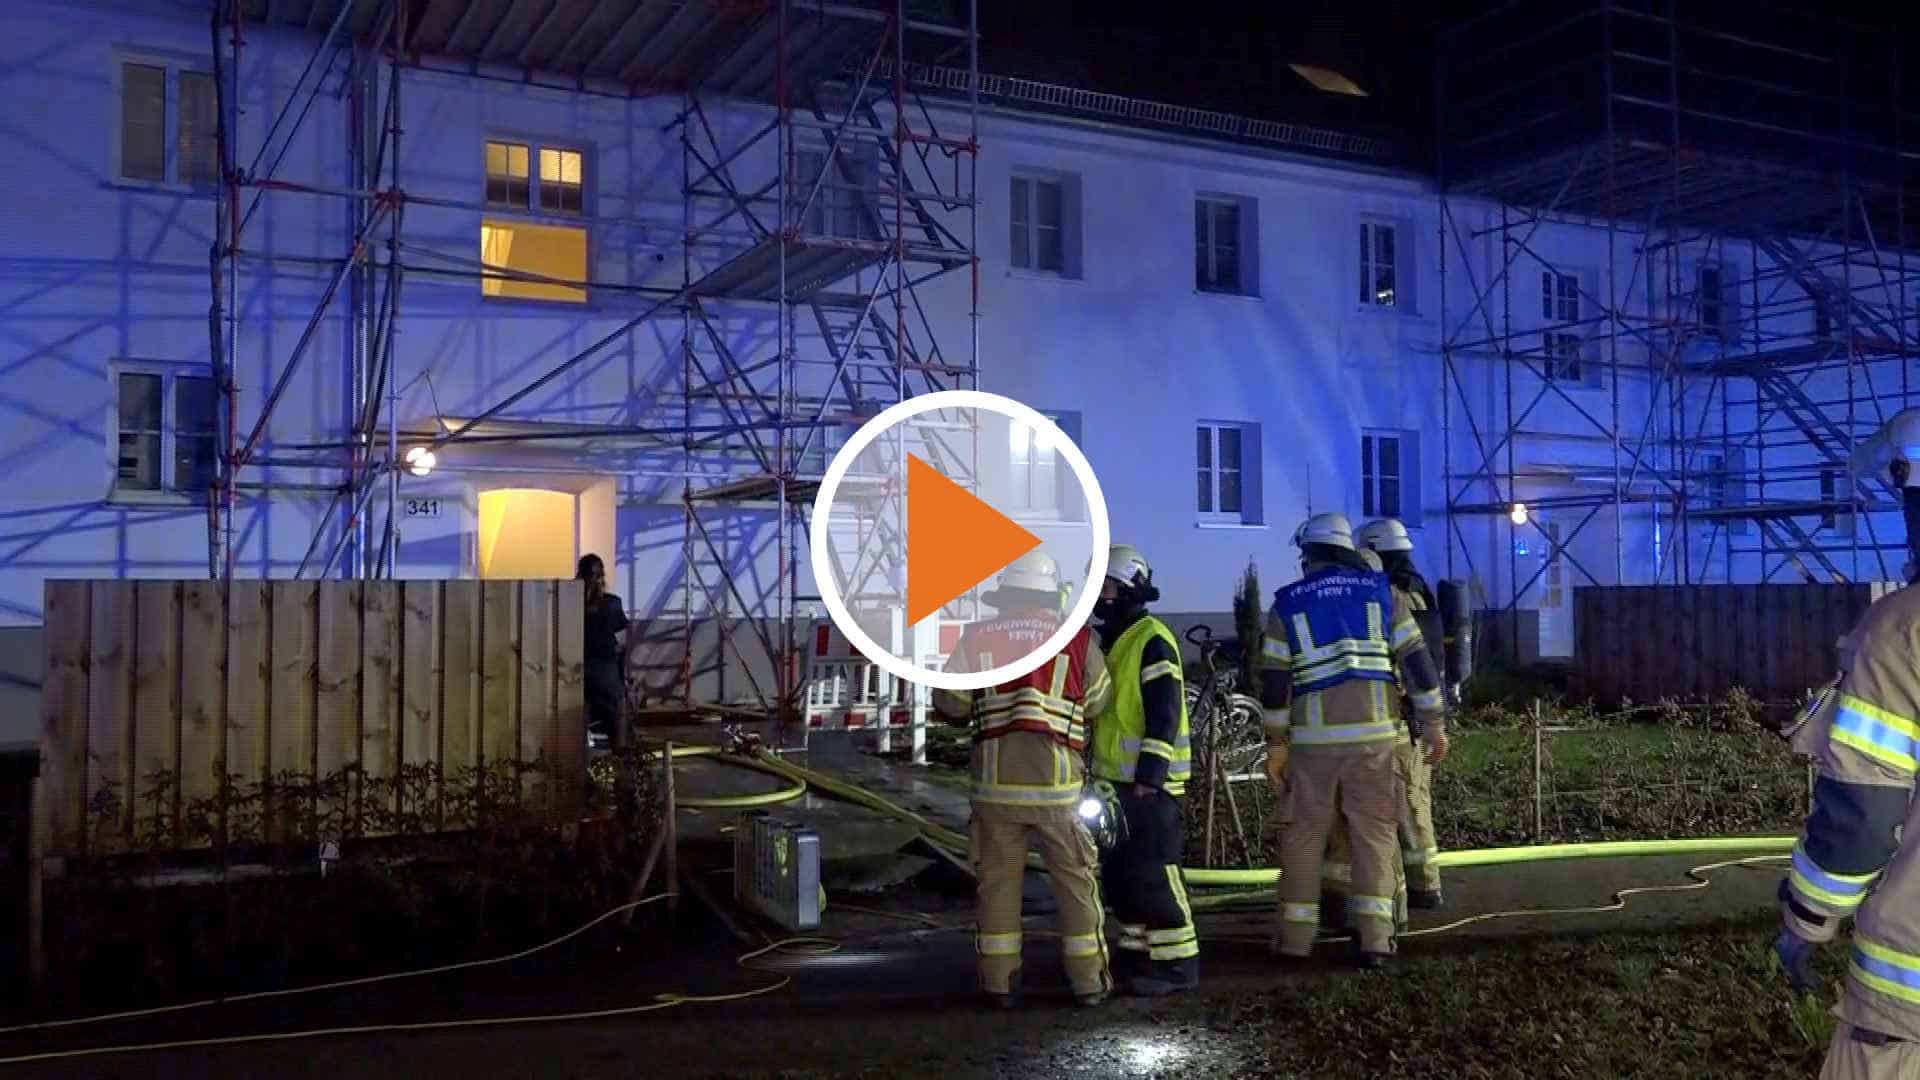 screen_20 12 23 Brand in Wohnhaus - 6 Menschen gerettet